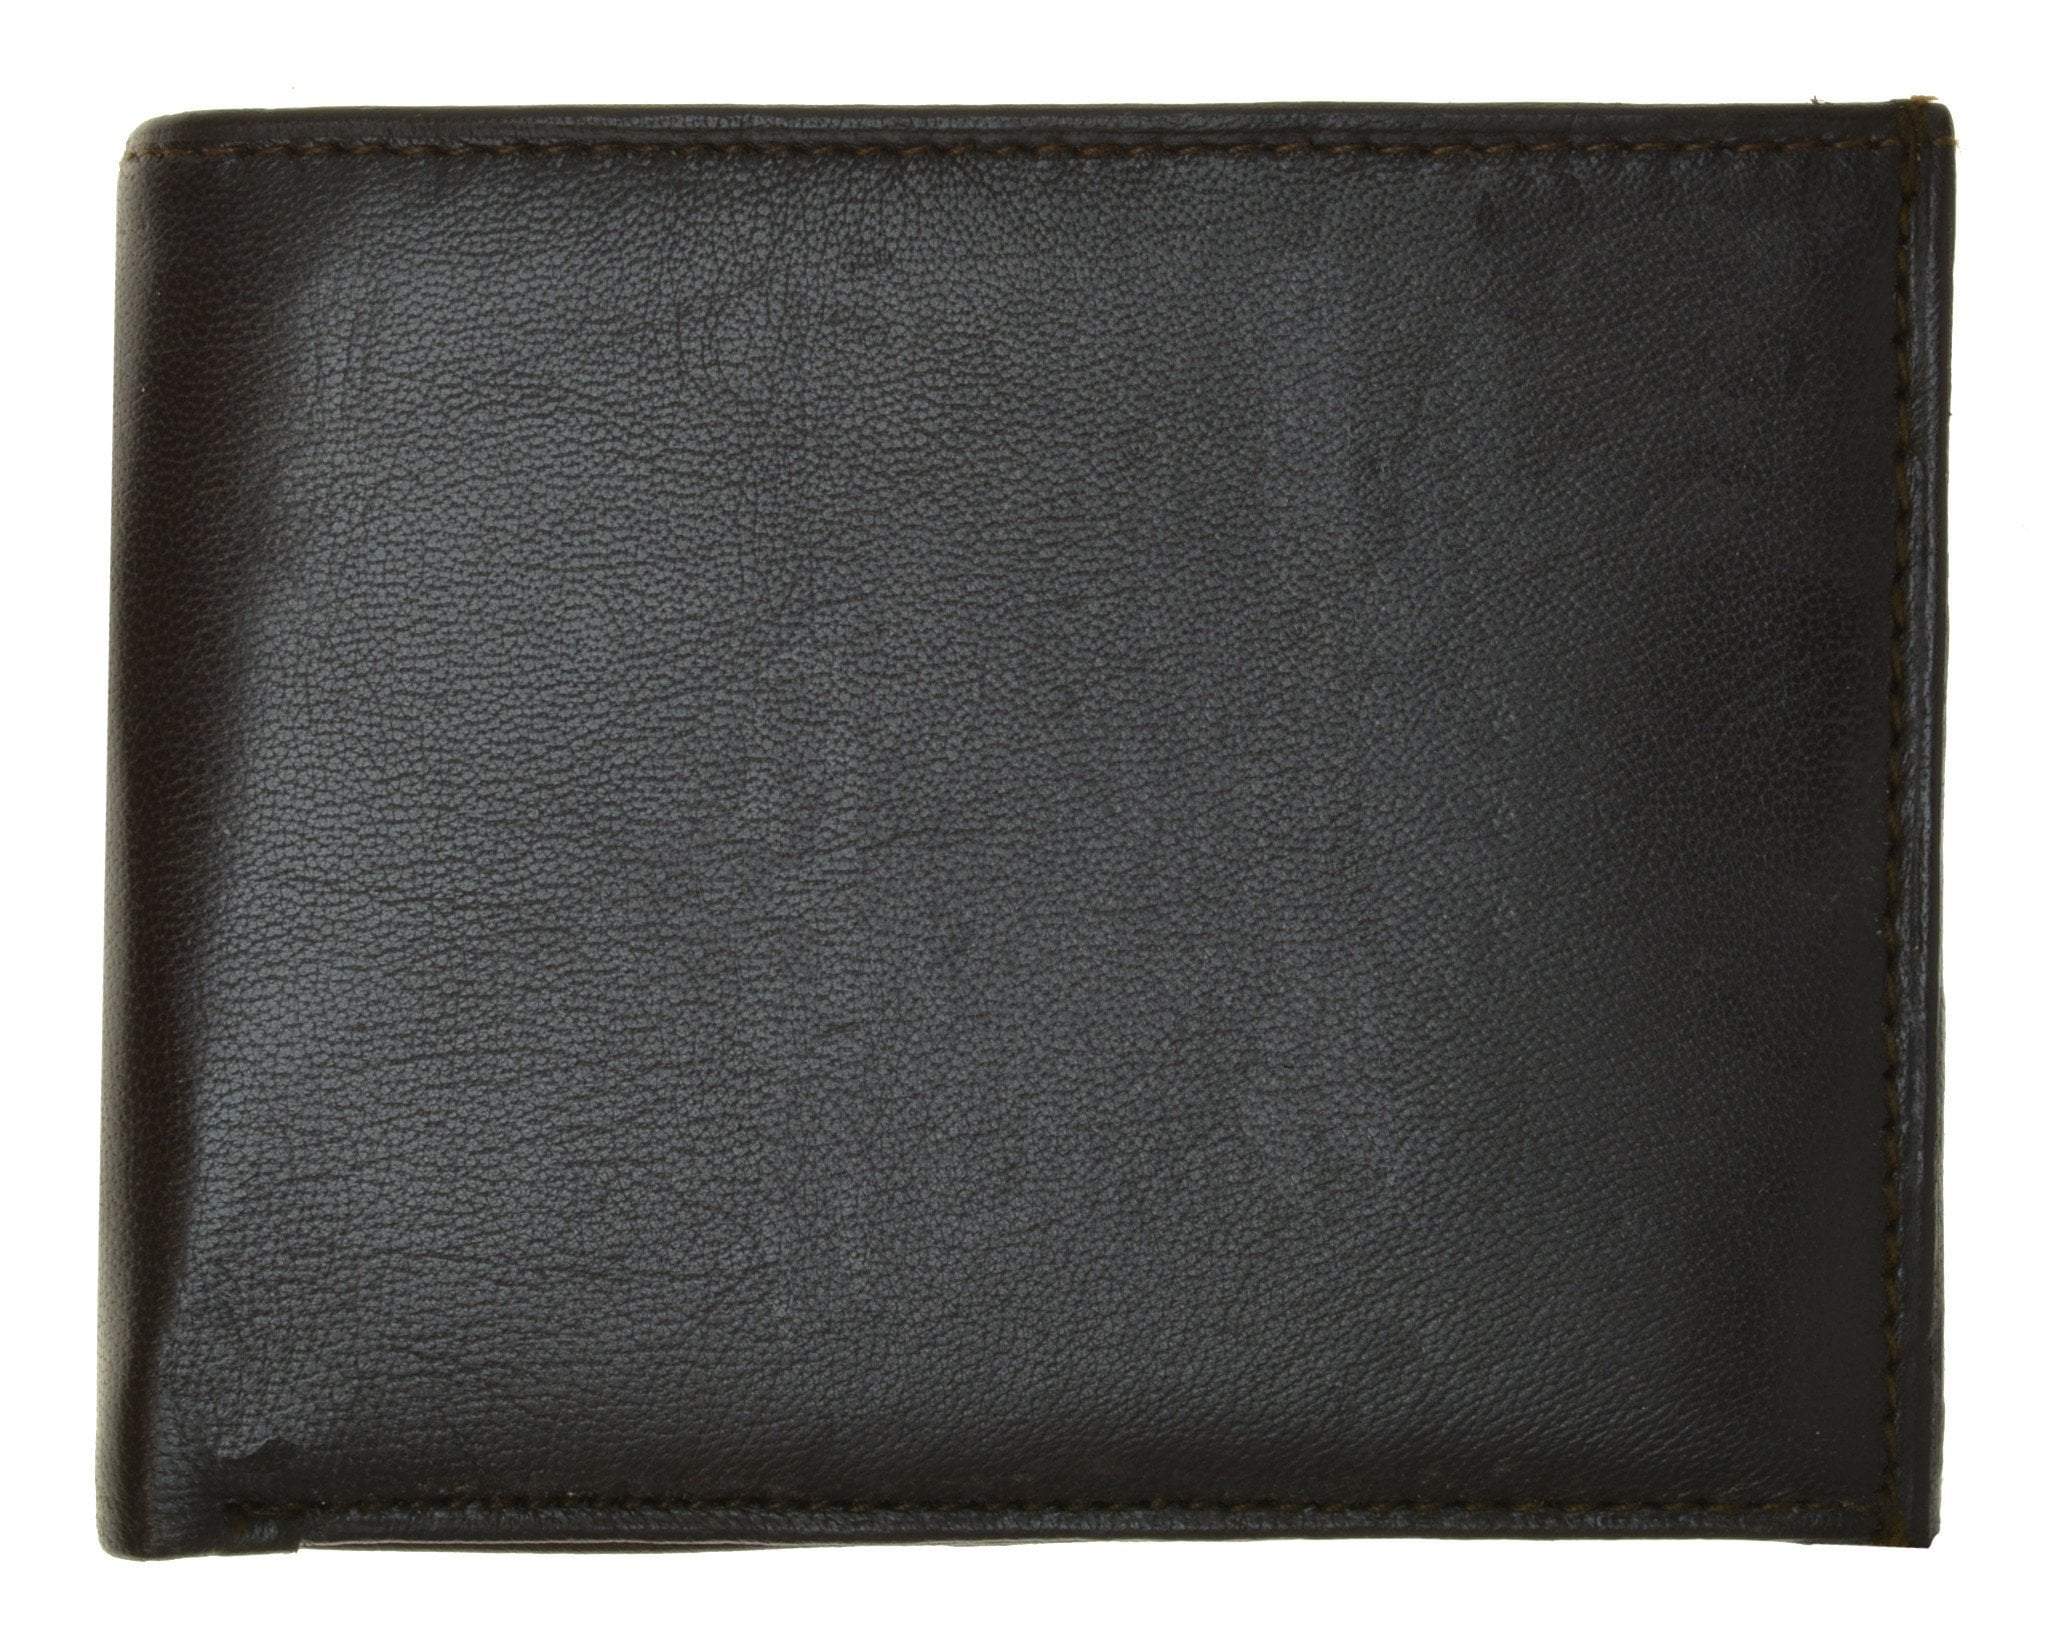 Buy/Send Wildhorn Genuine Leather Mens Wallet Brown Online- FNP